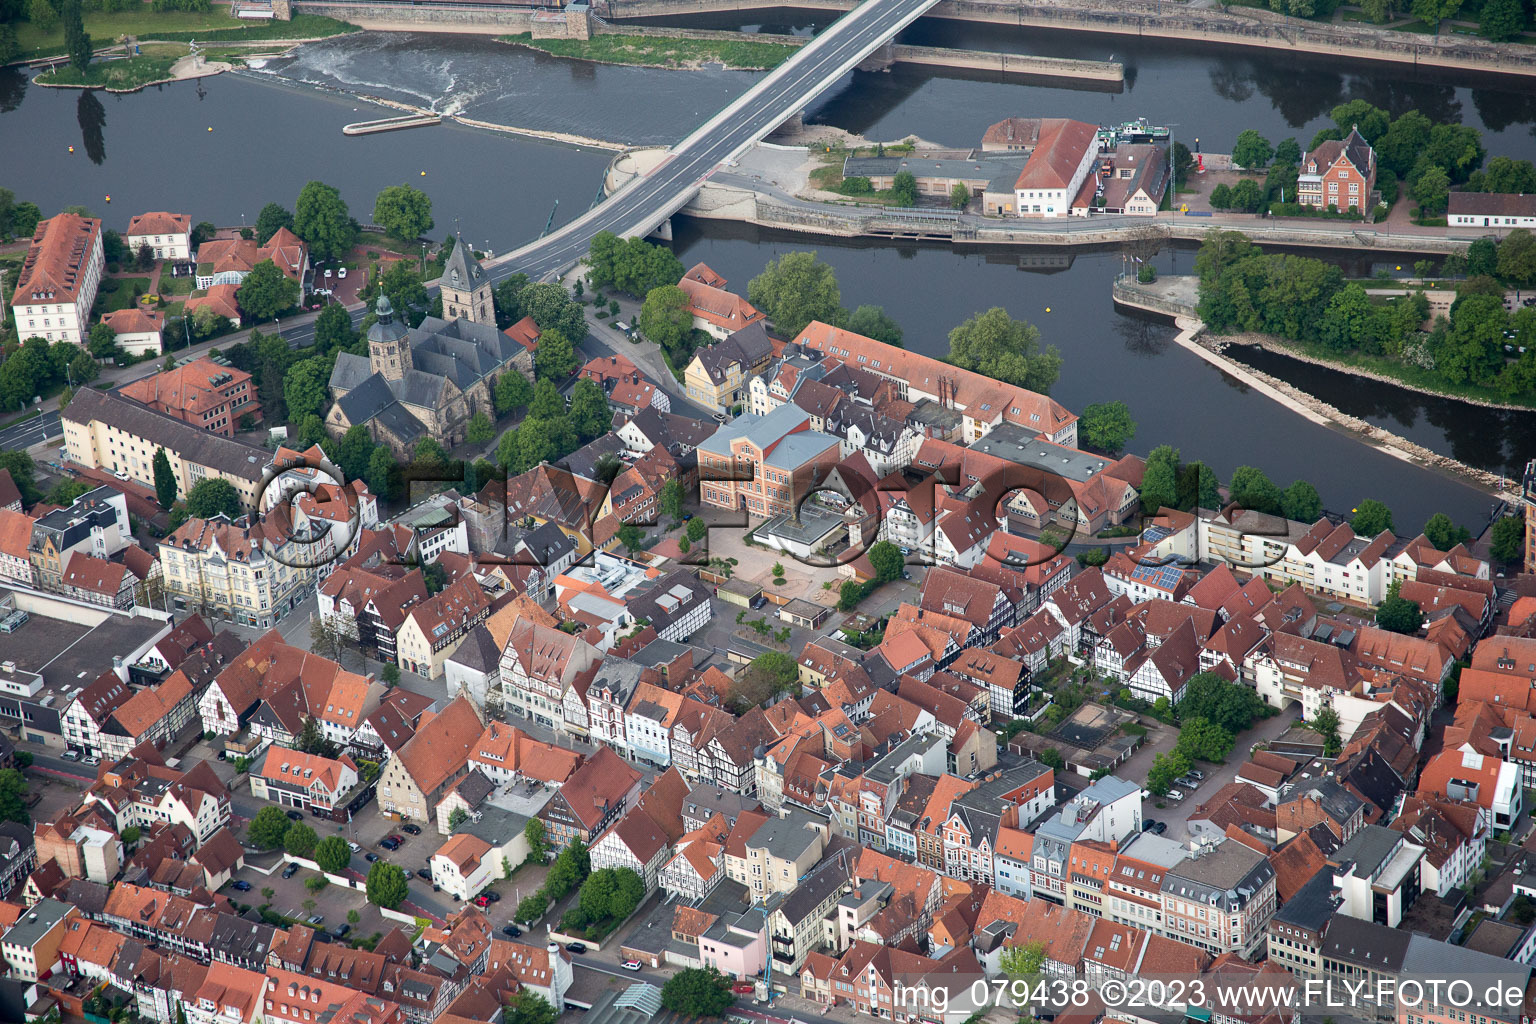 Hameln im Bundesland Niedersachsen, Deutschland aus der Luft betrachtet